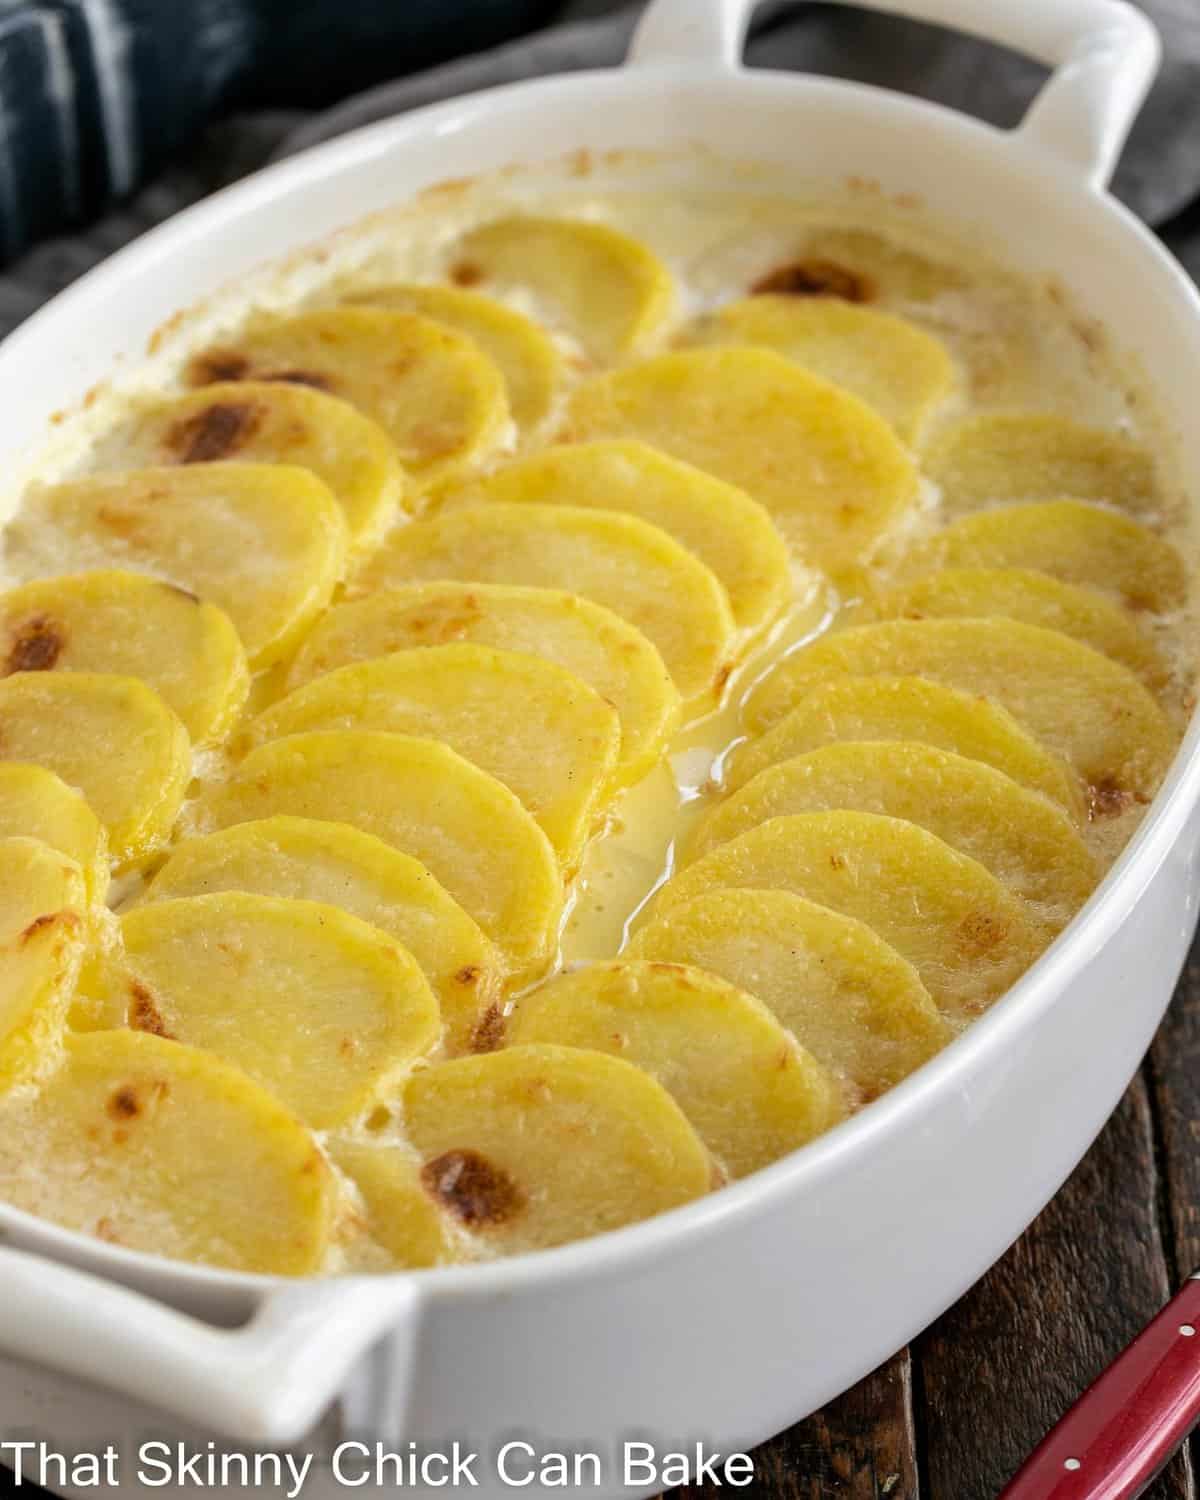 Oval casserole dish of scalloped potatoes.